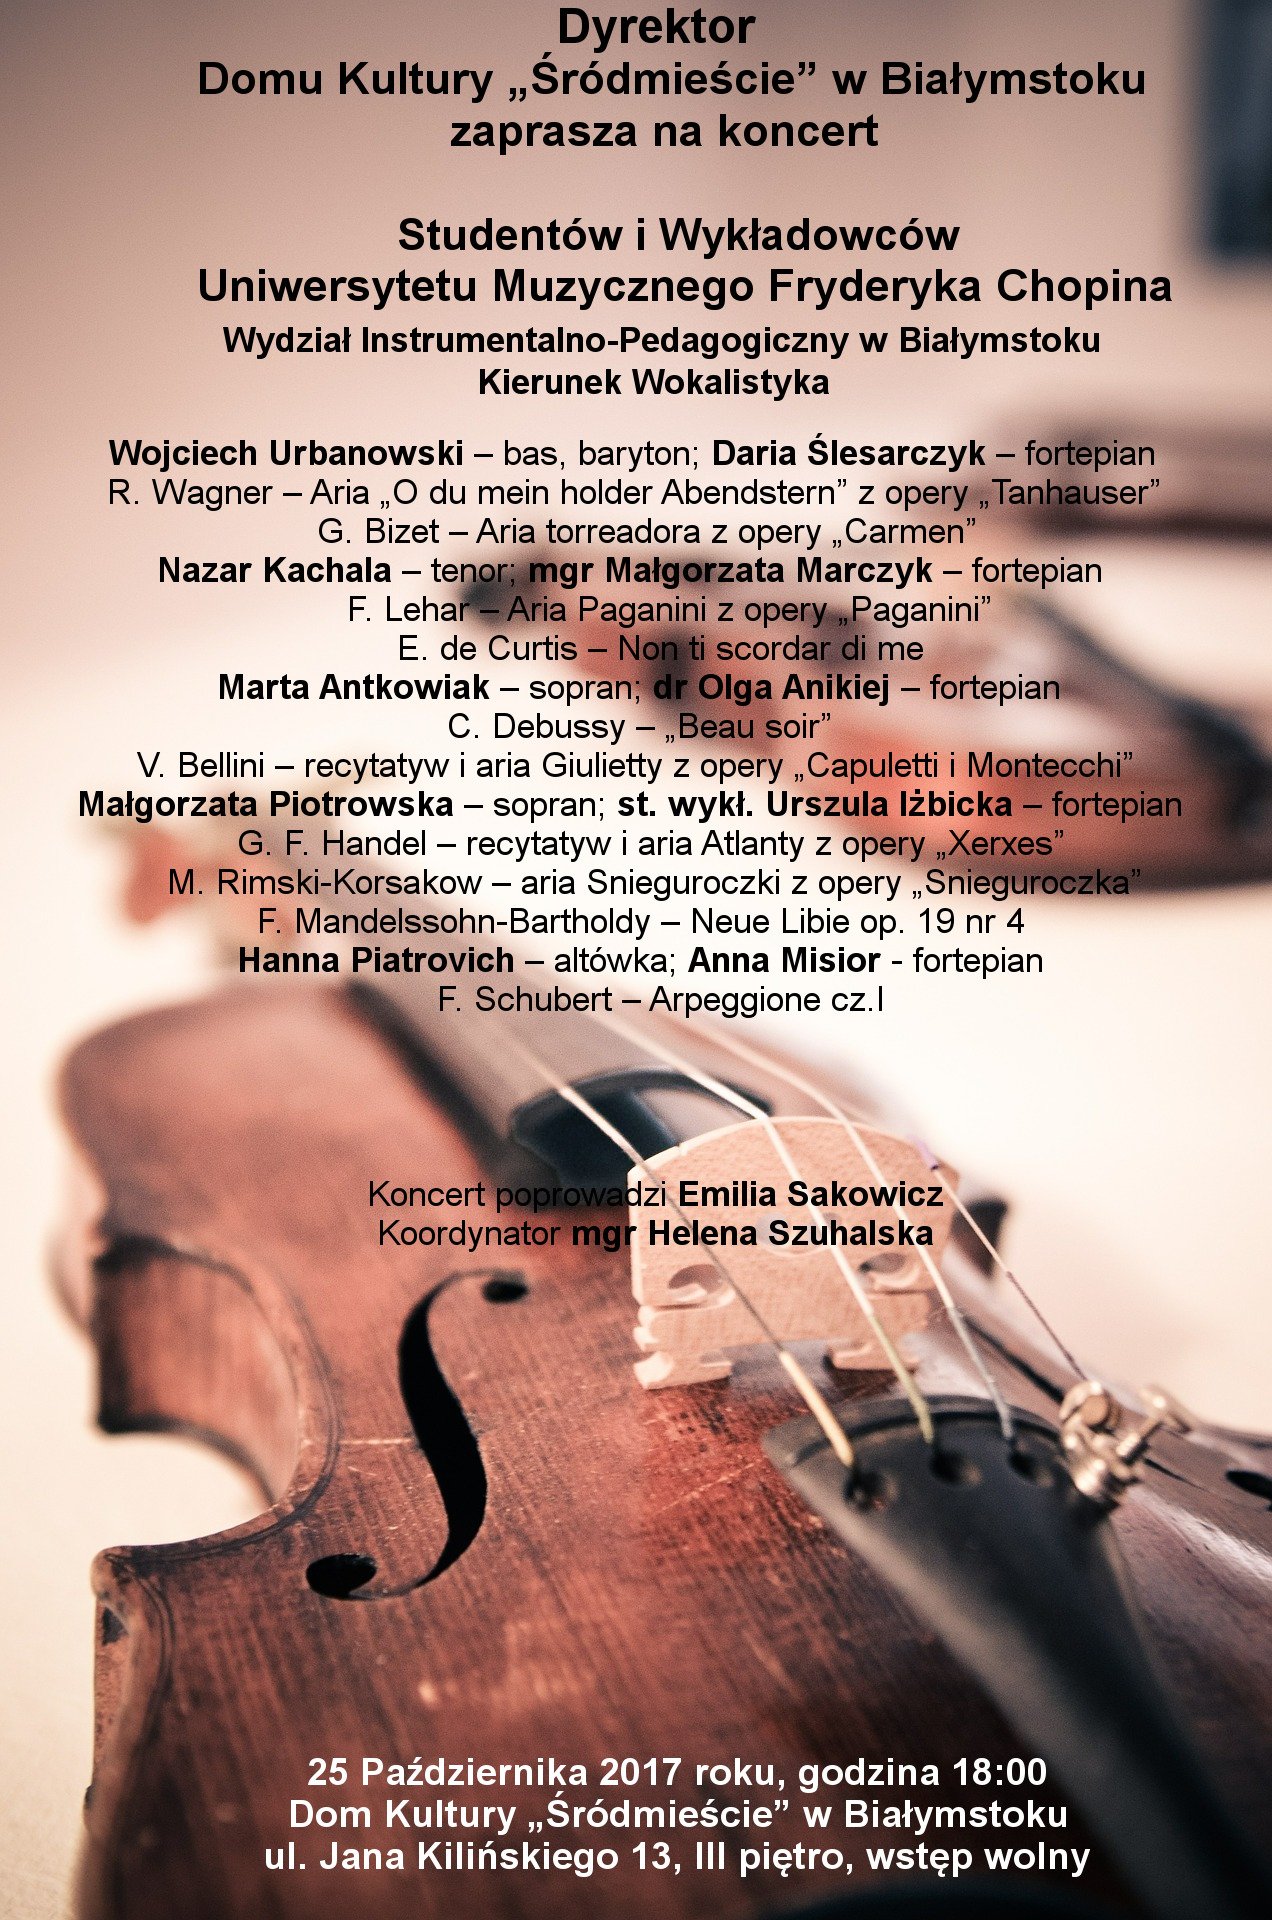 plakat koncertu studentów i wykładowców uniwersytetu muzycznego fryderyka chopina w dkś